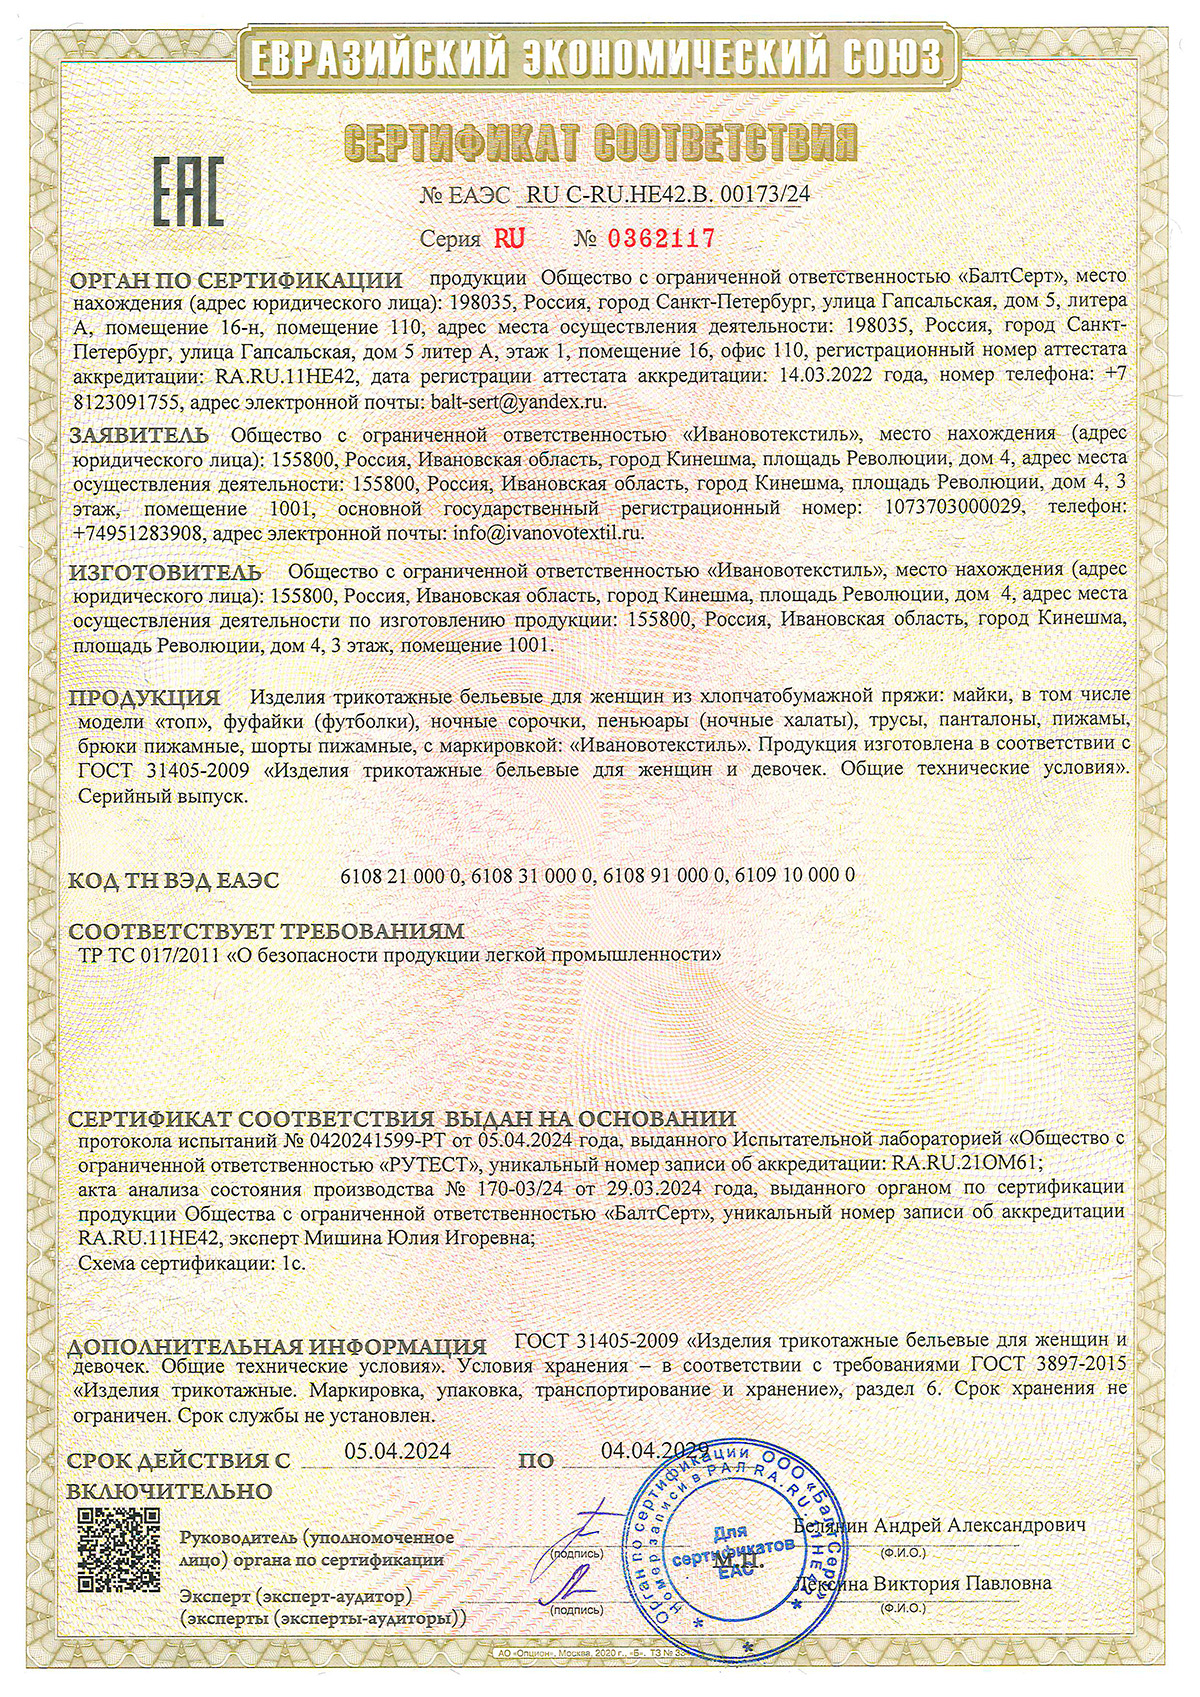 Сертификат соответствия на изделия трикотажные для женщин до 04.04.2029 г.